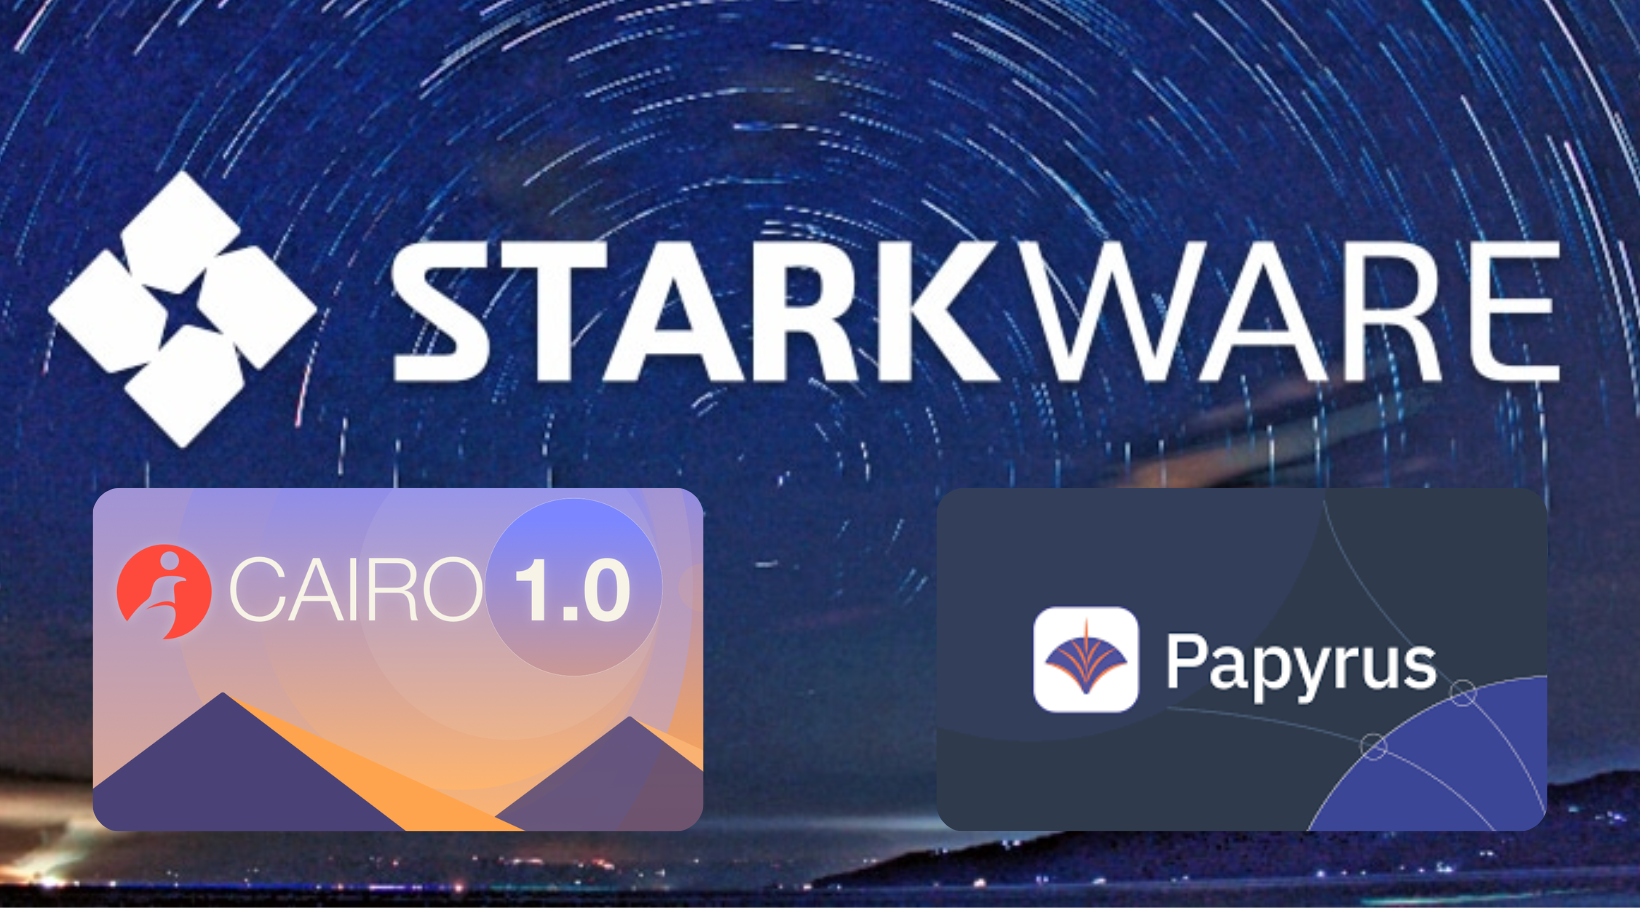 StarkWare lanzó Cairo 1.0 y Papyrus.